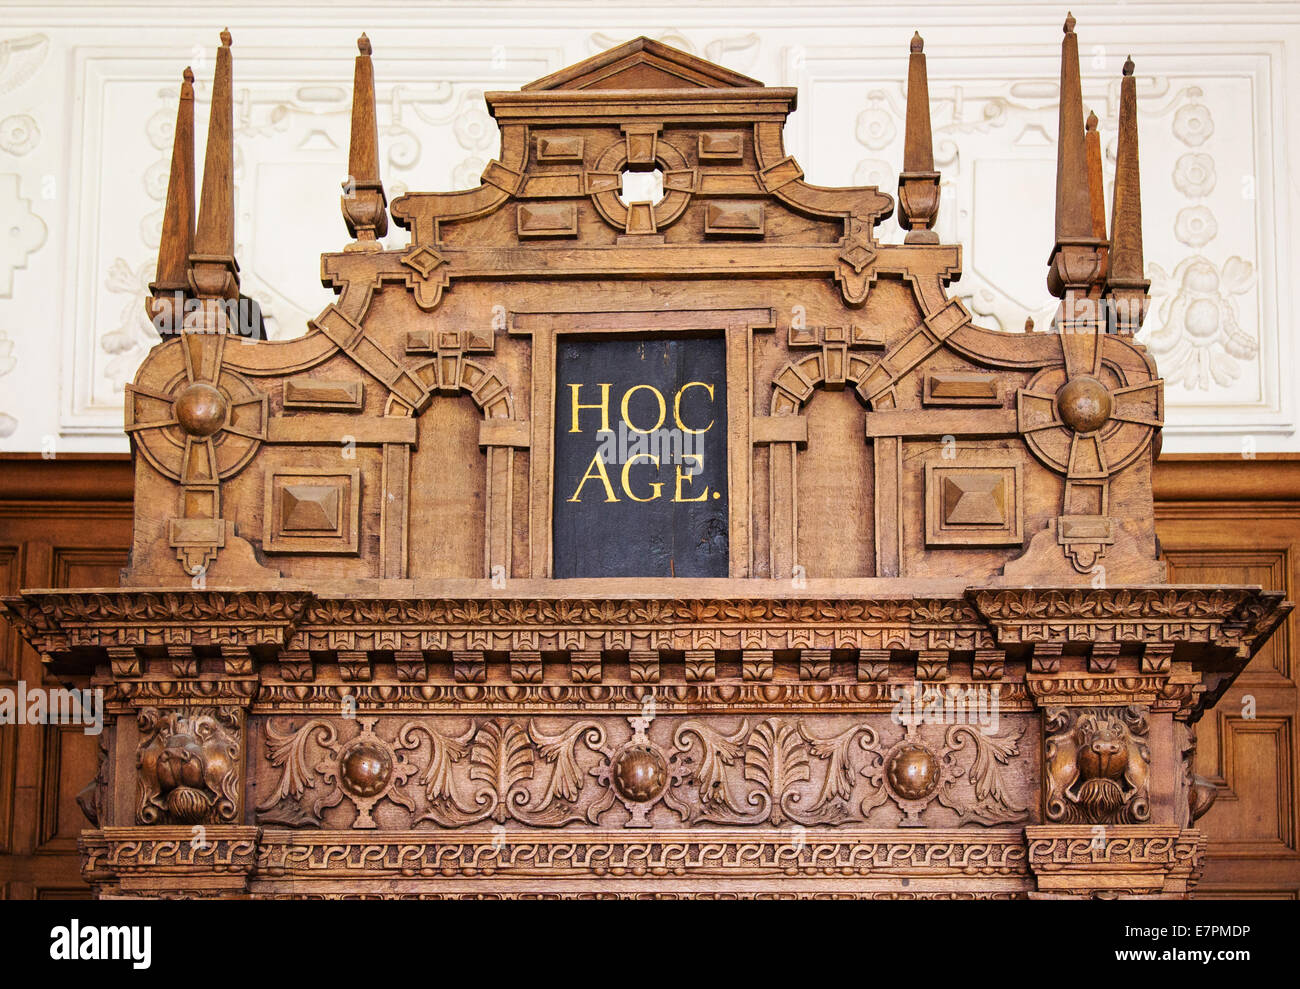 Verzierten Veranda mit dem lateinischen Motto Hoc Age - dies tun - in der Bibliothek am Montacute eine elisabethanische Herrenhaus in Somerset UK Stockfoto